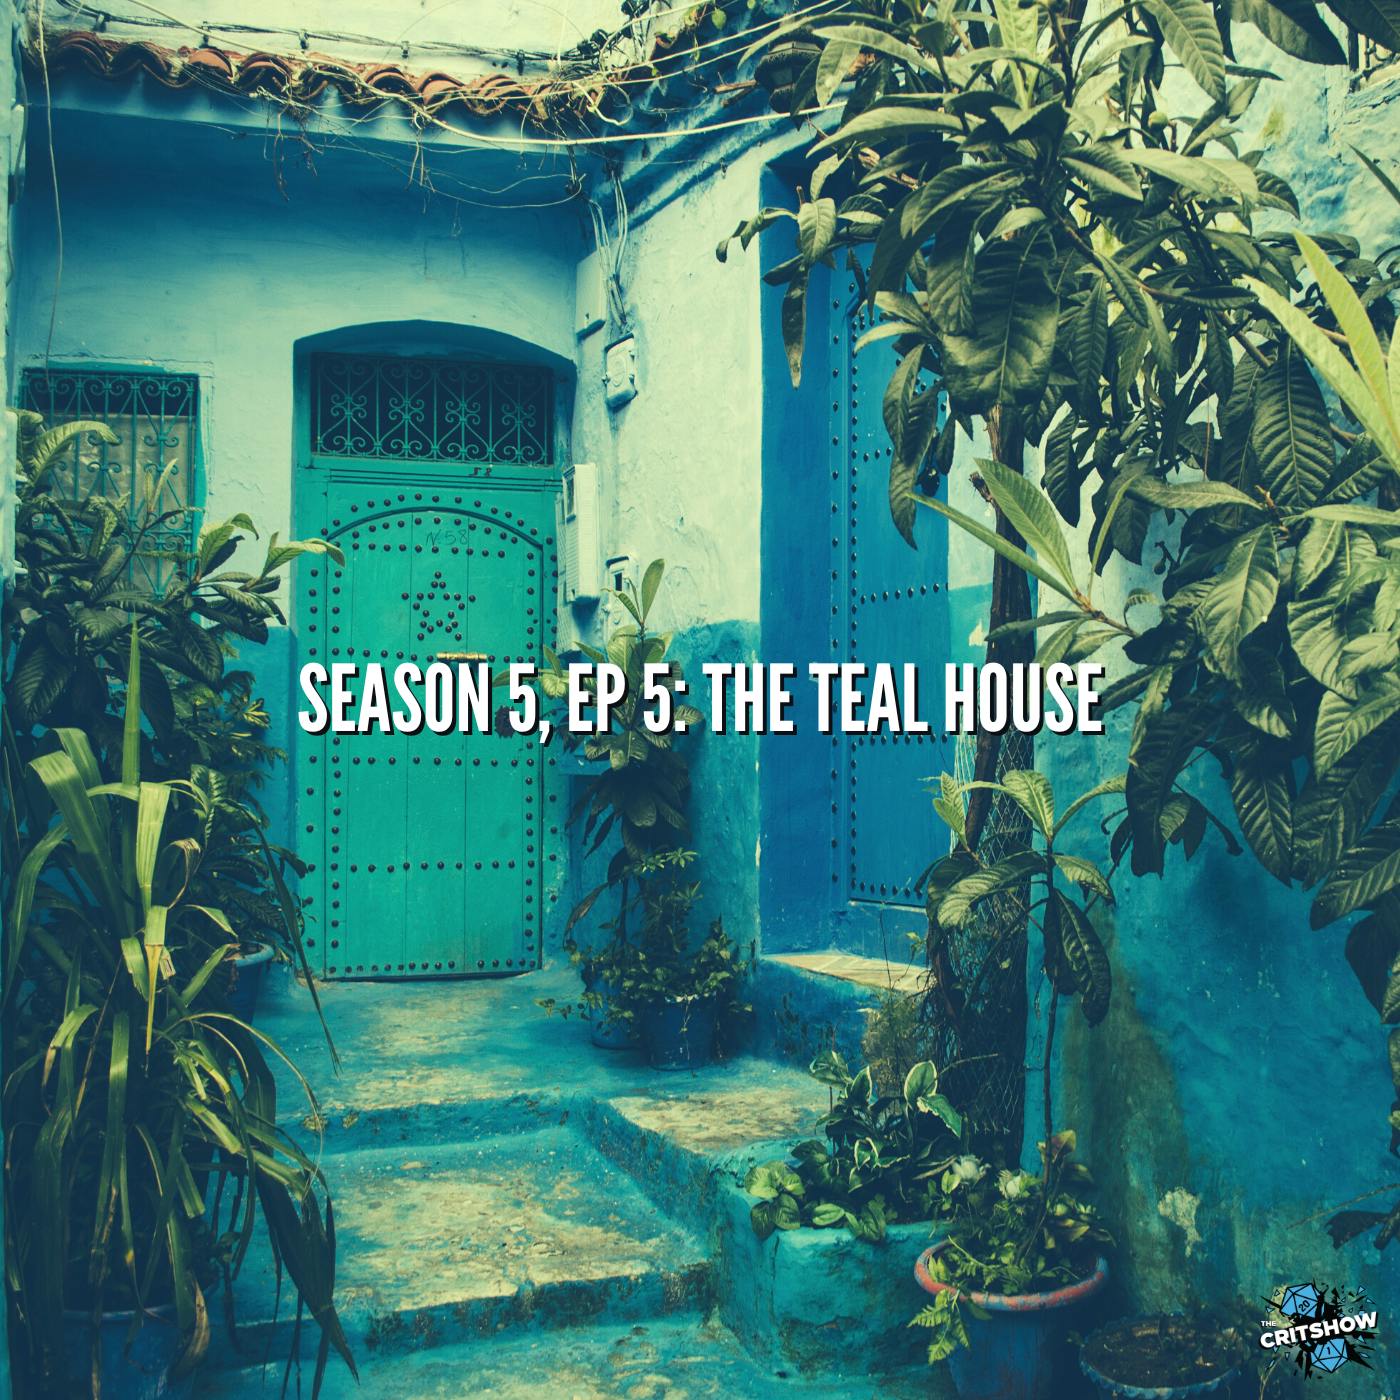 The Teal House (S5, E5)